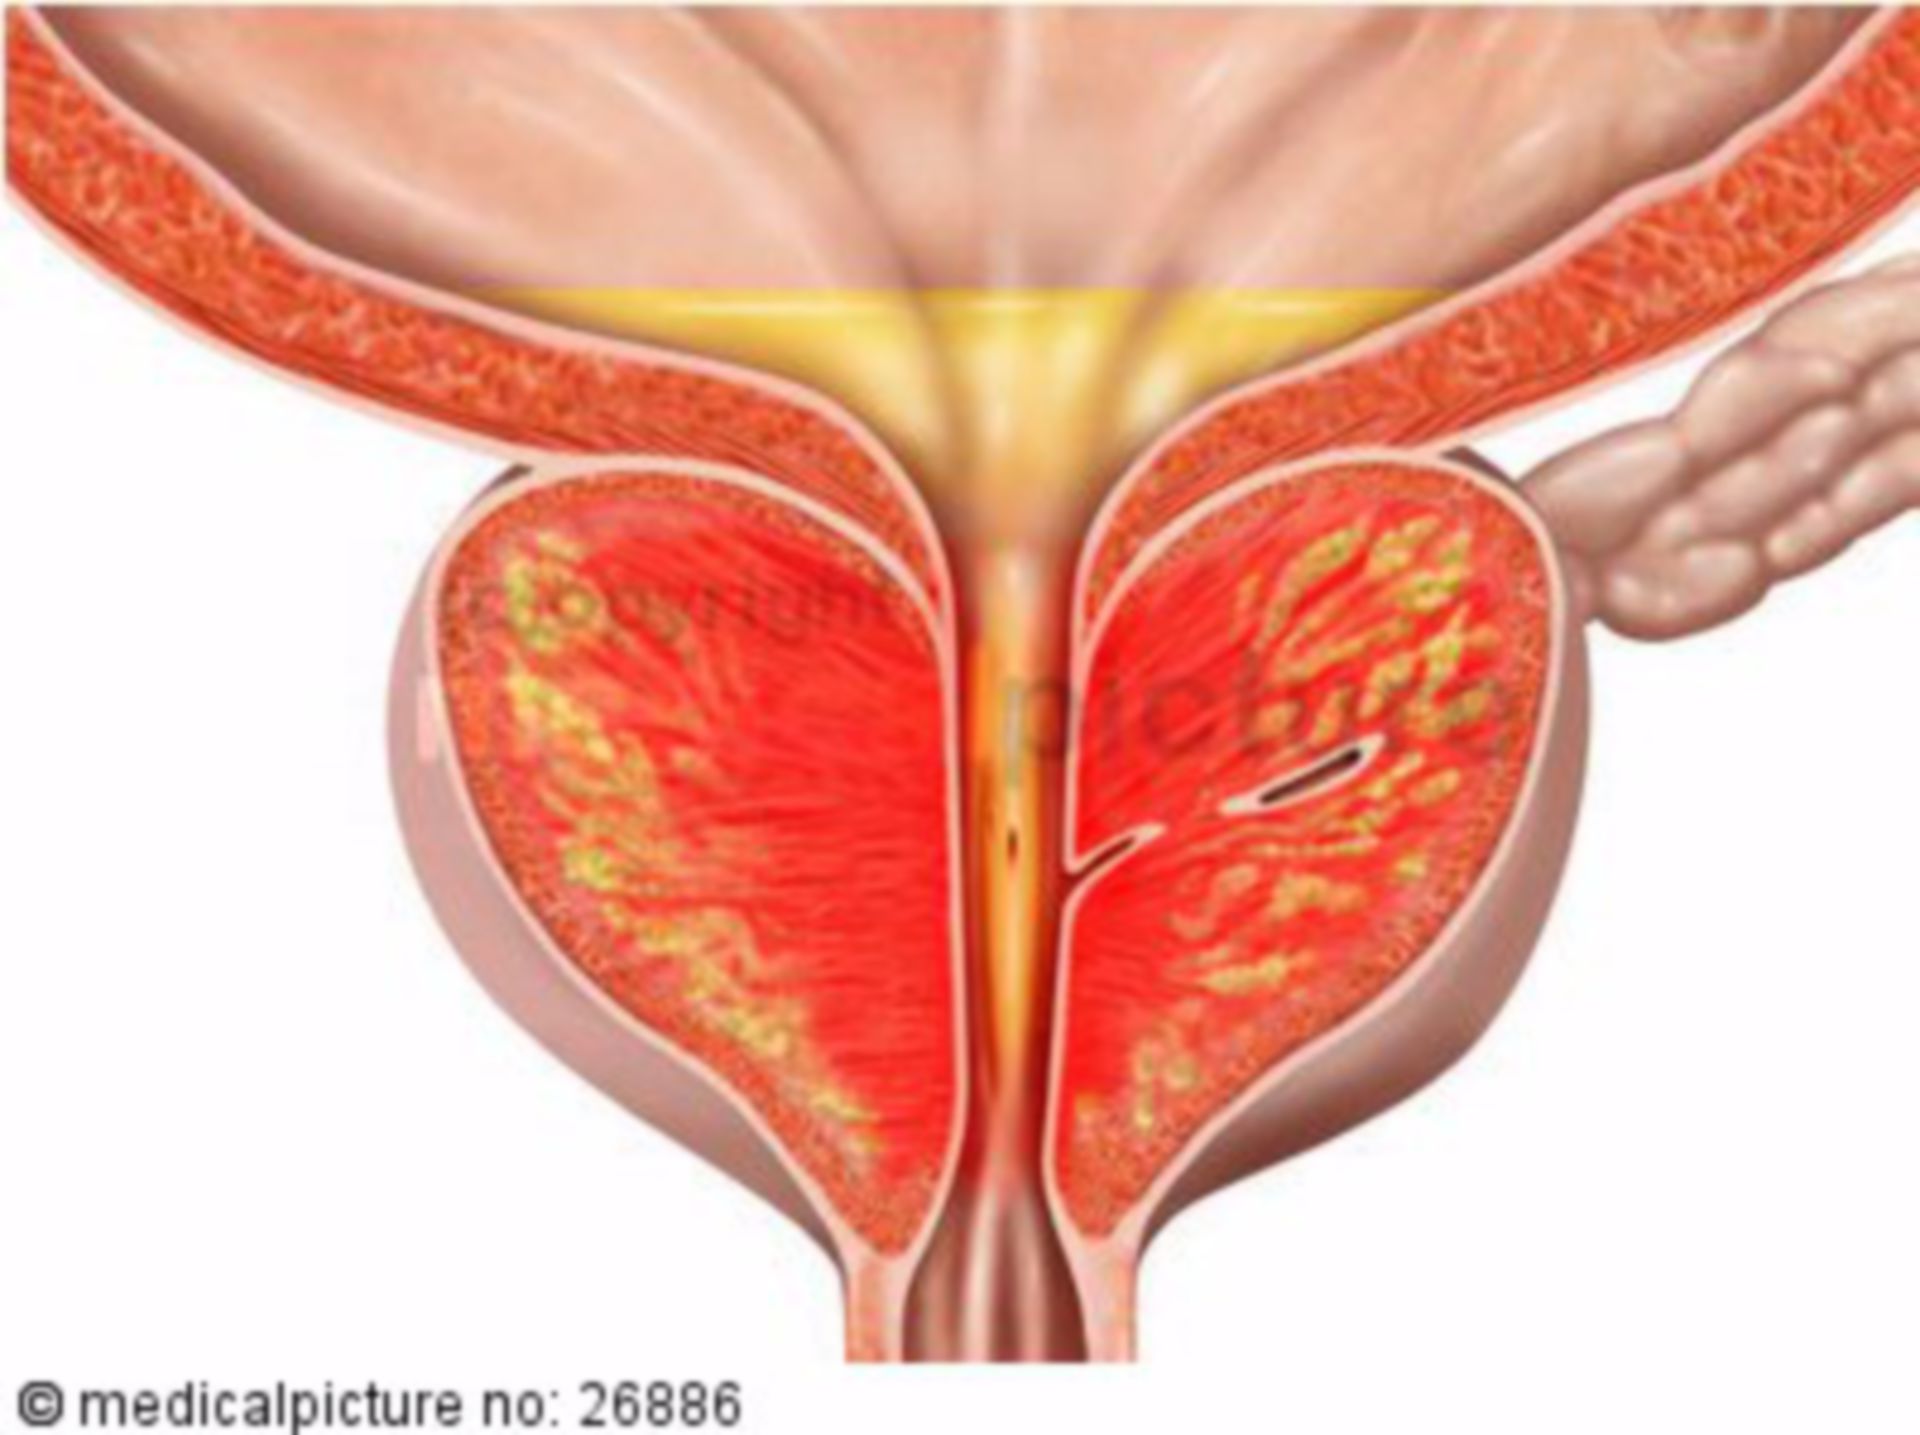 Entzündete Vorsteherdrüse mit Urinrückstauung, Prostata